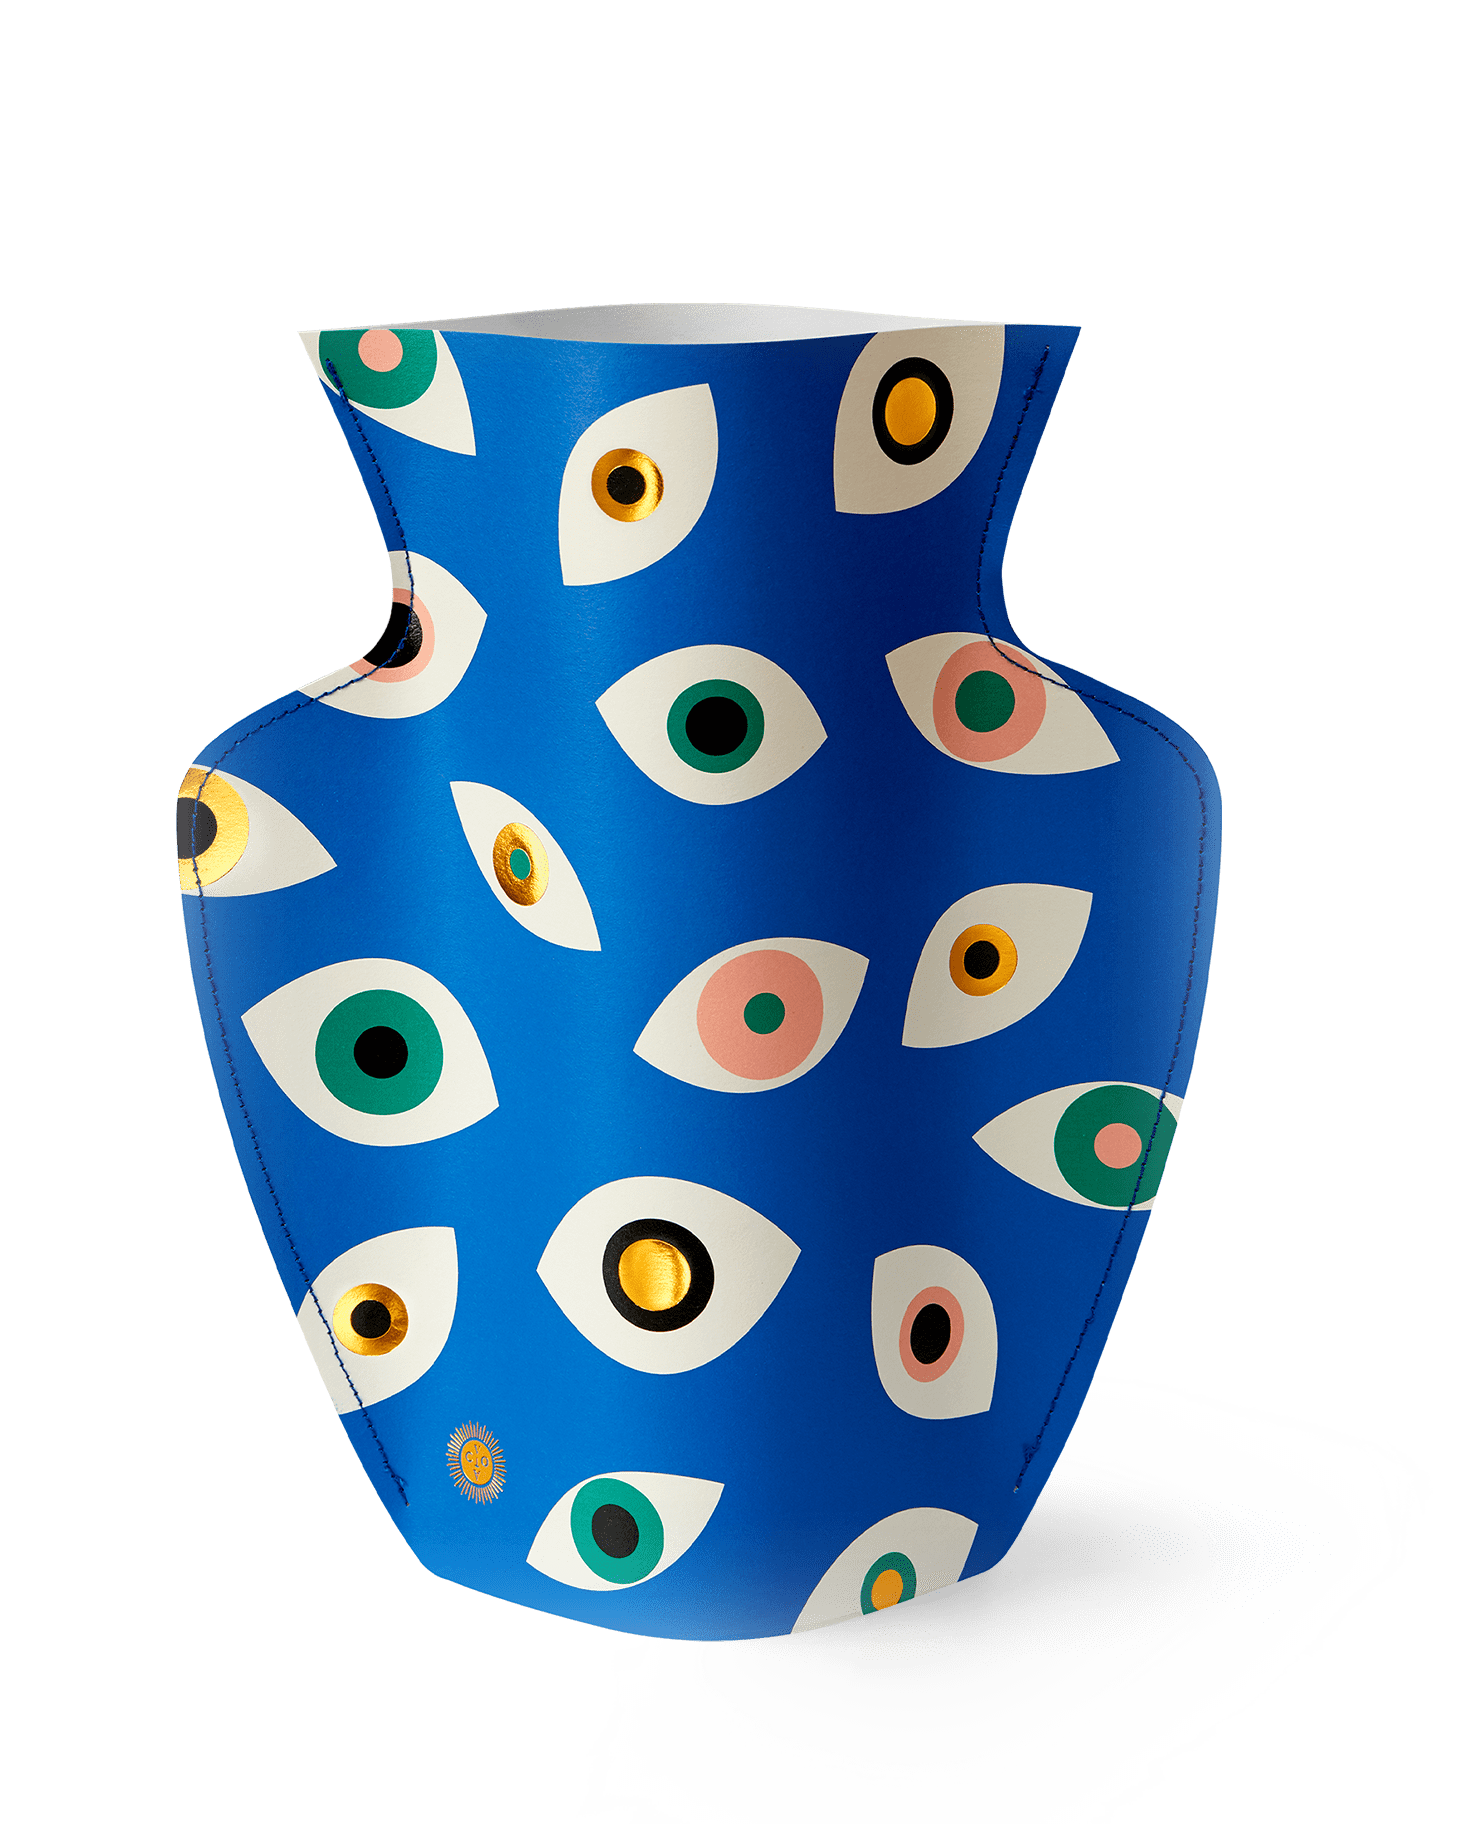 Octaevo Vase Blue Paper Evil Eye Vase by Octaevo - Large or Mini